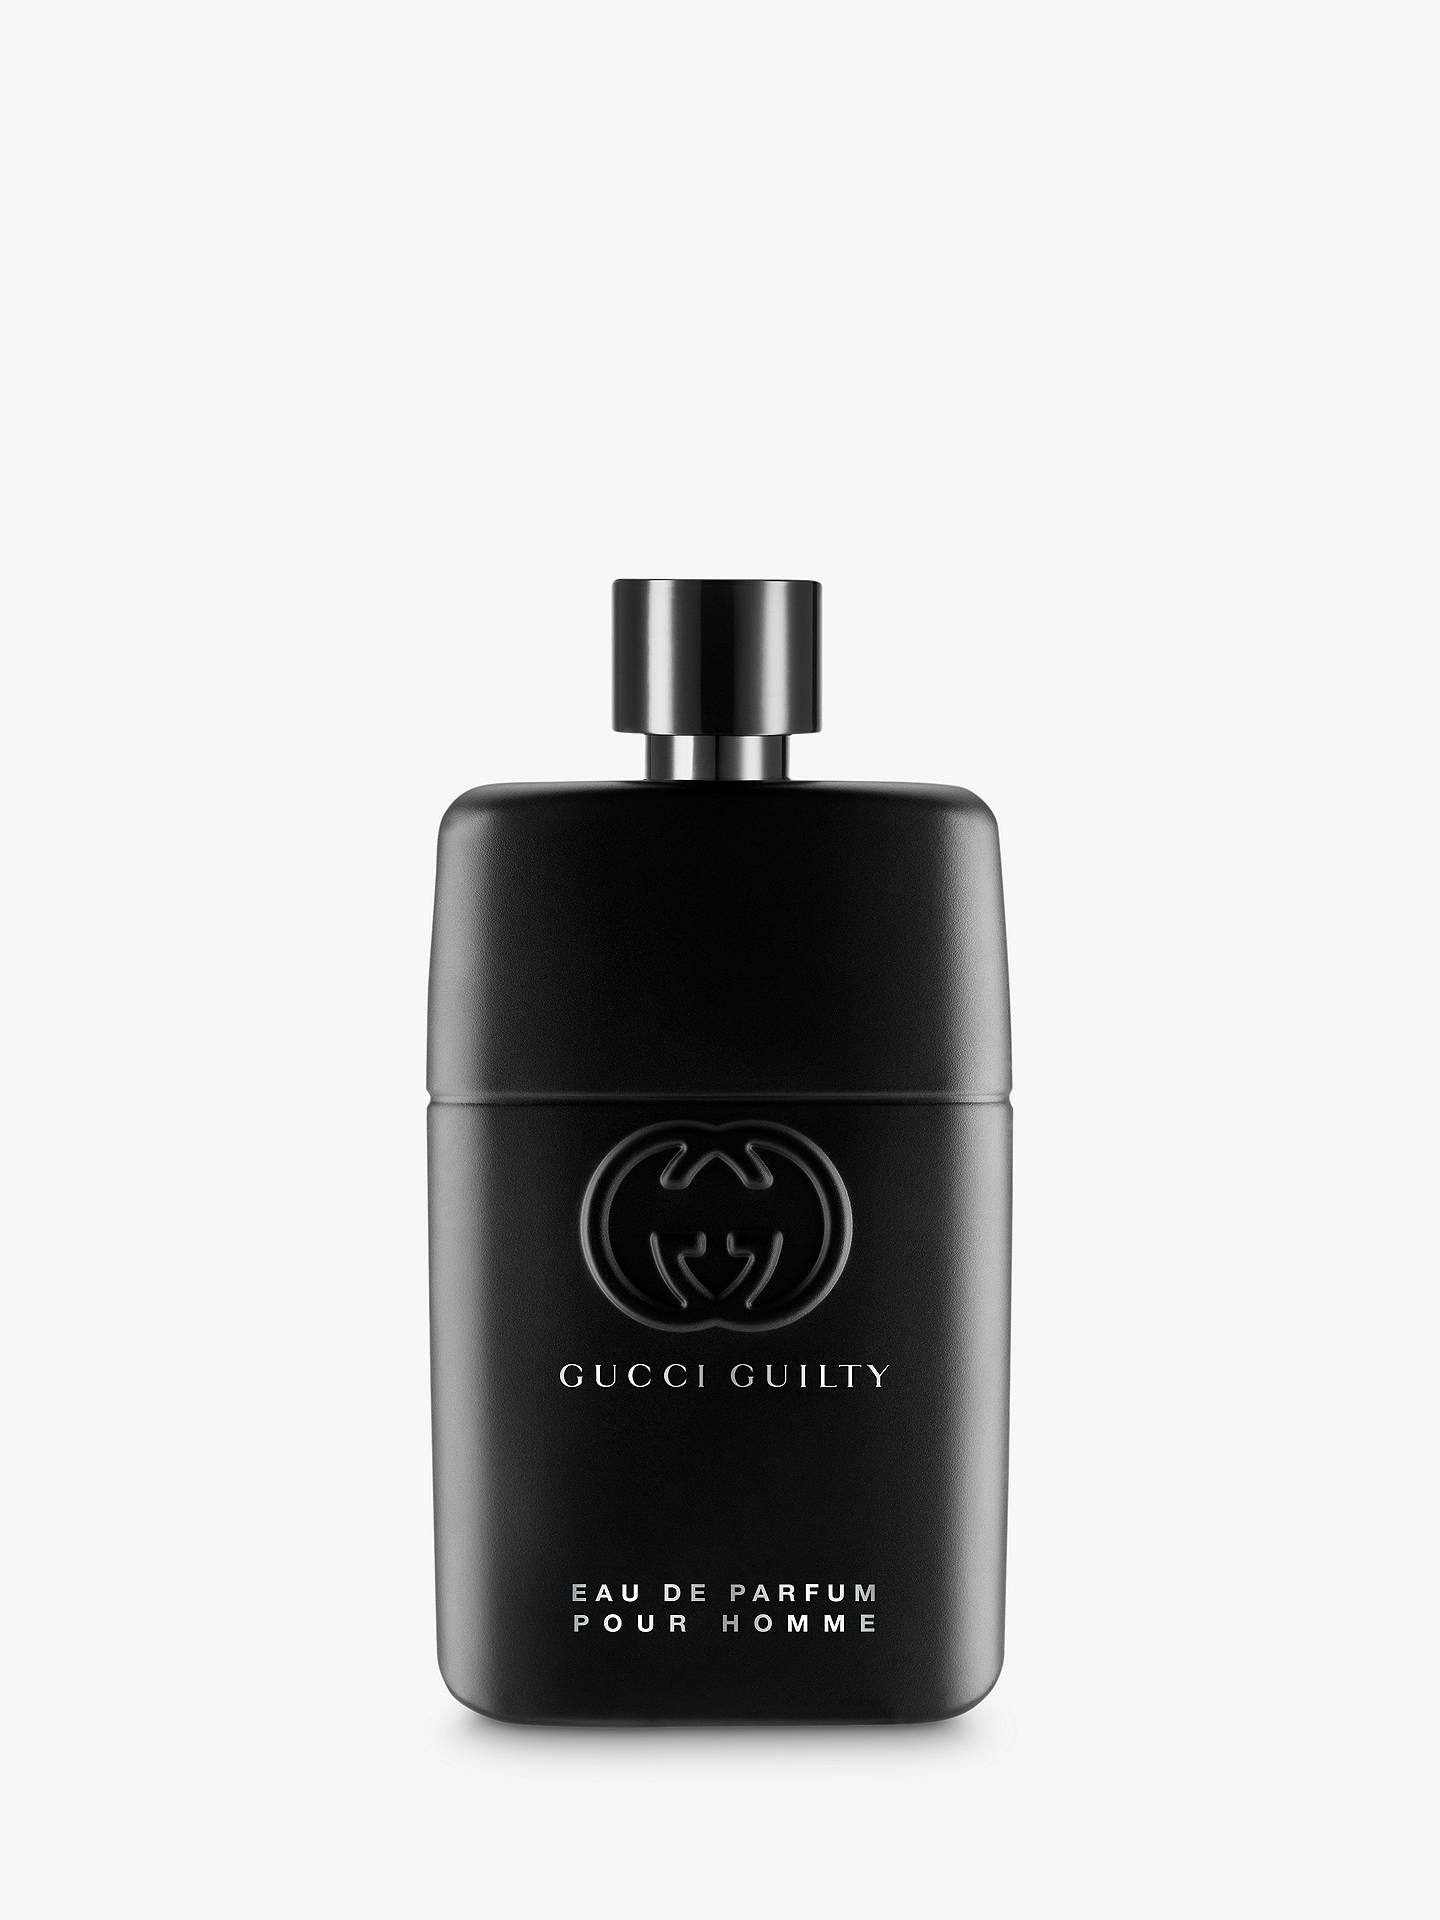 Gucci Guilty Pour Homme Eau de Parfum at John Lewis & Partners